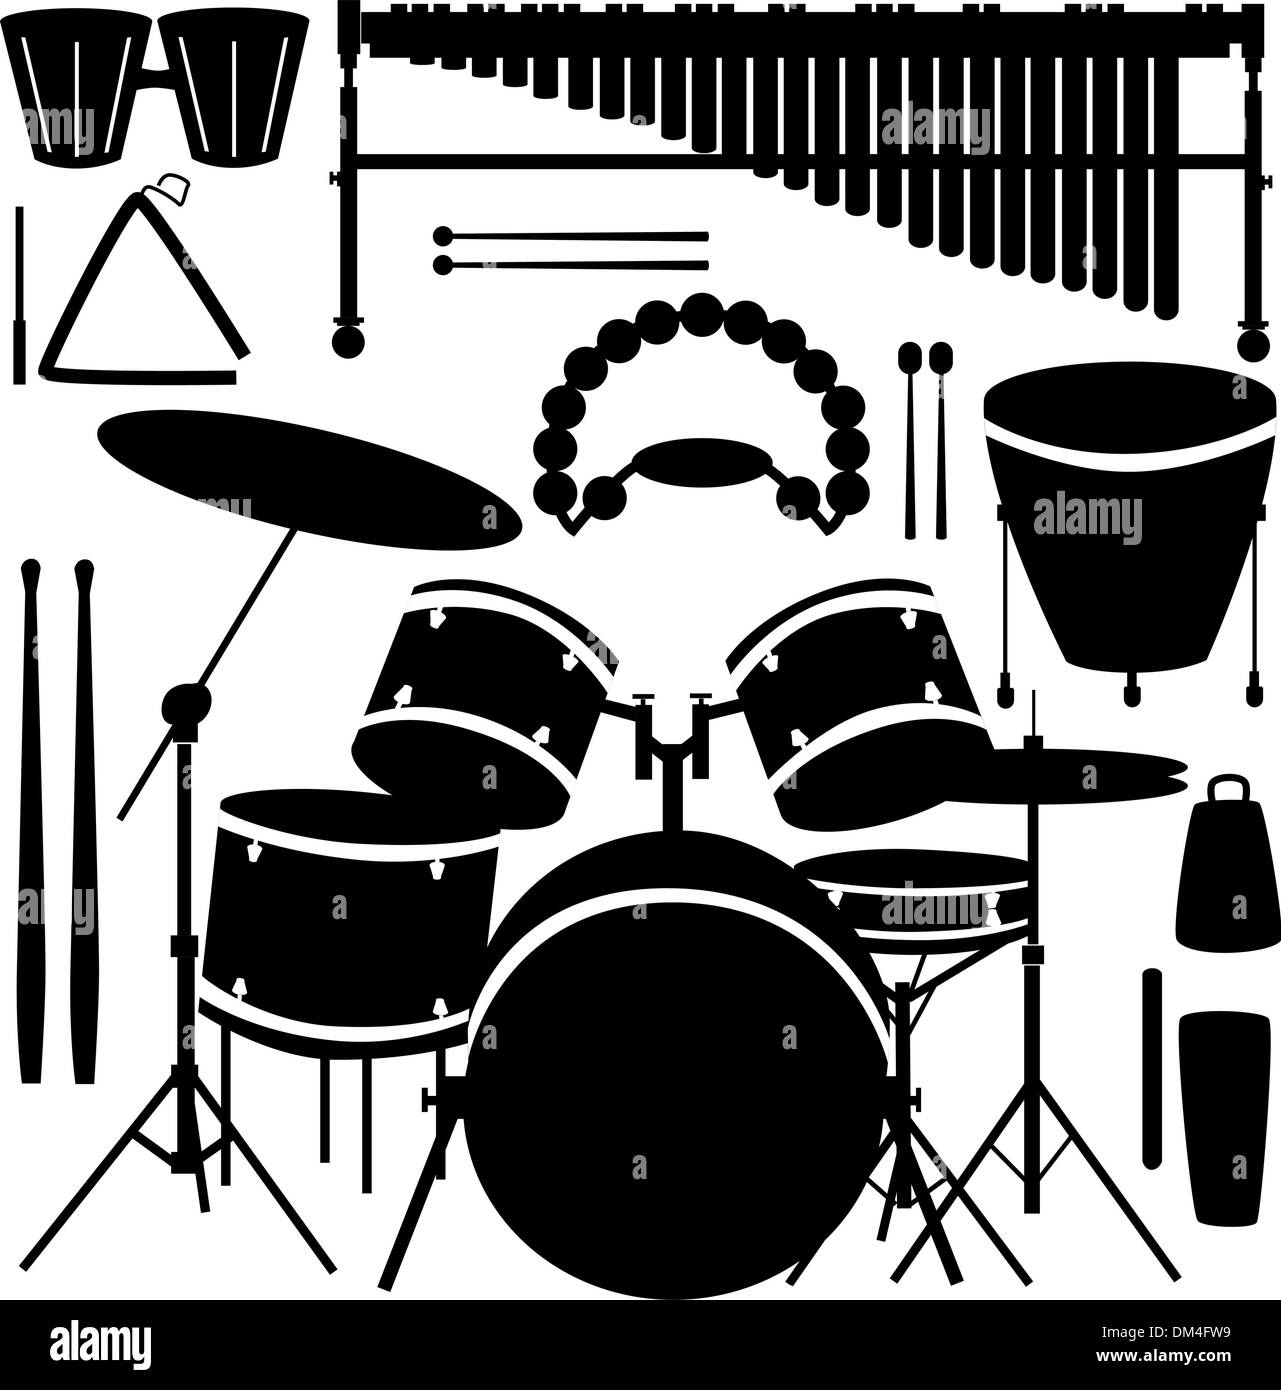 Instrumentos de percusión Imágenes de stock en blanco y negro - Alamy